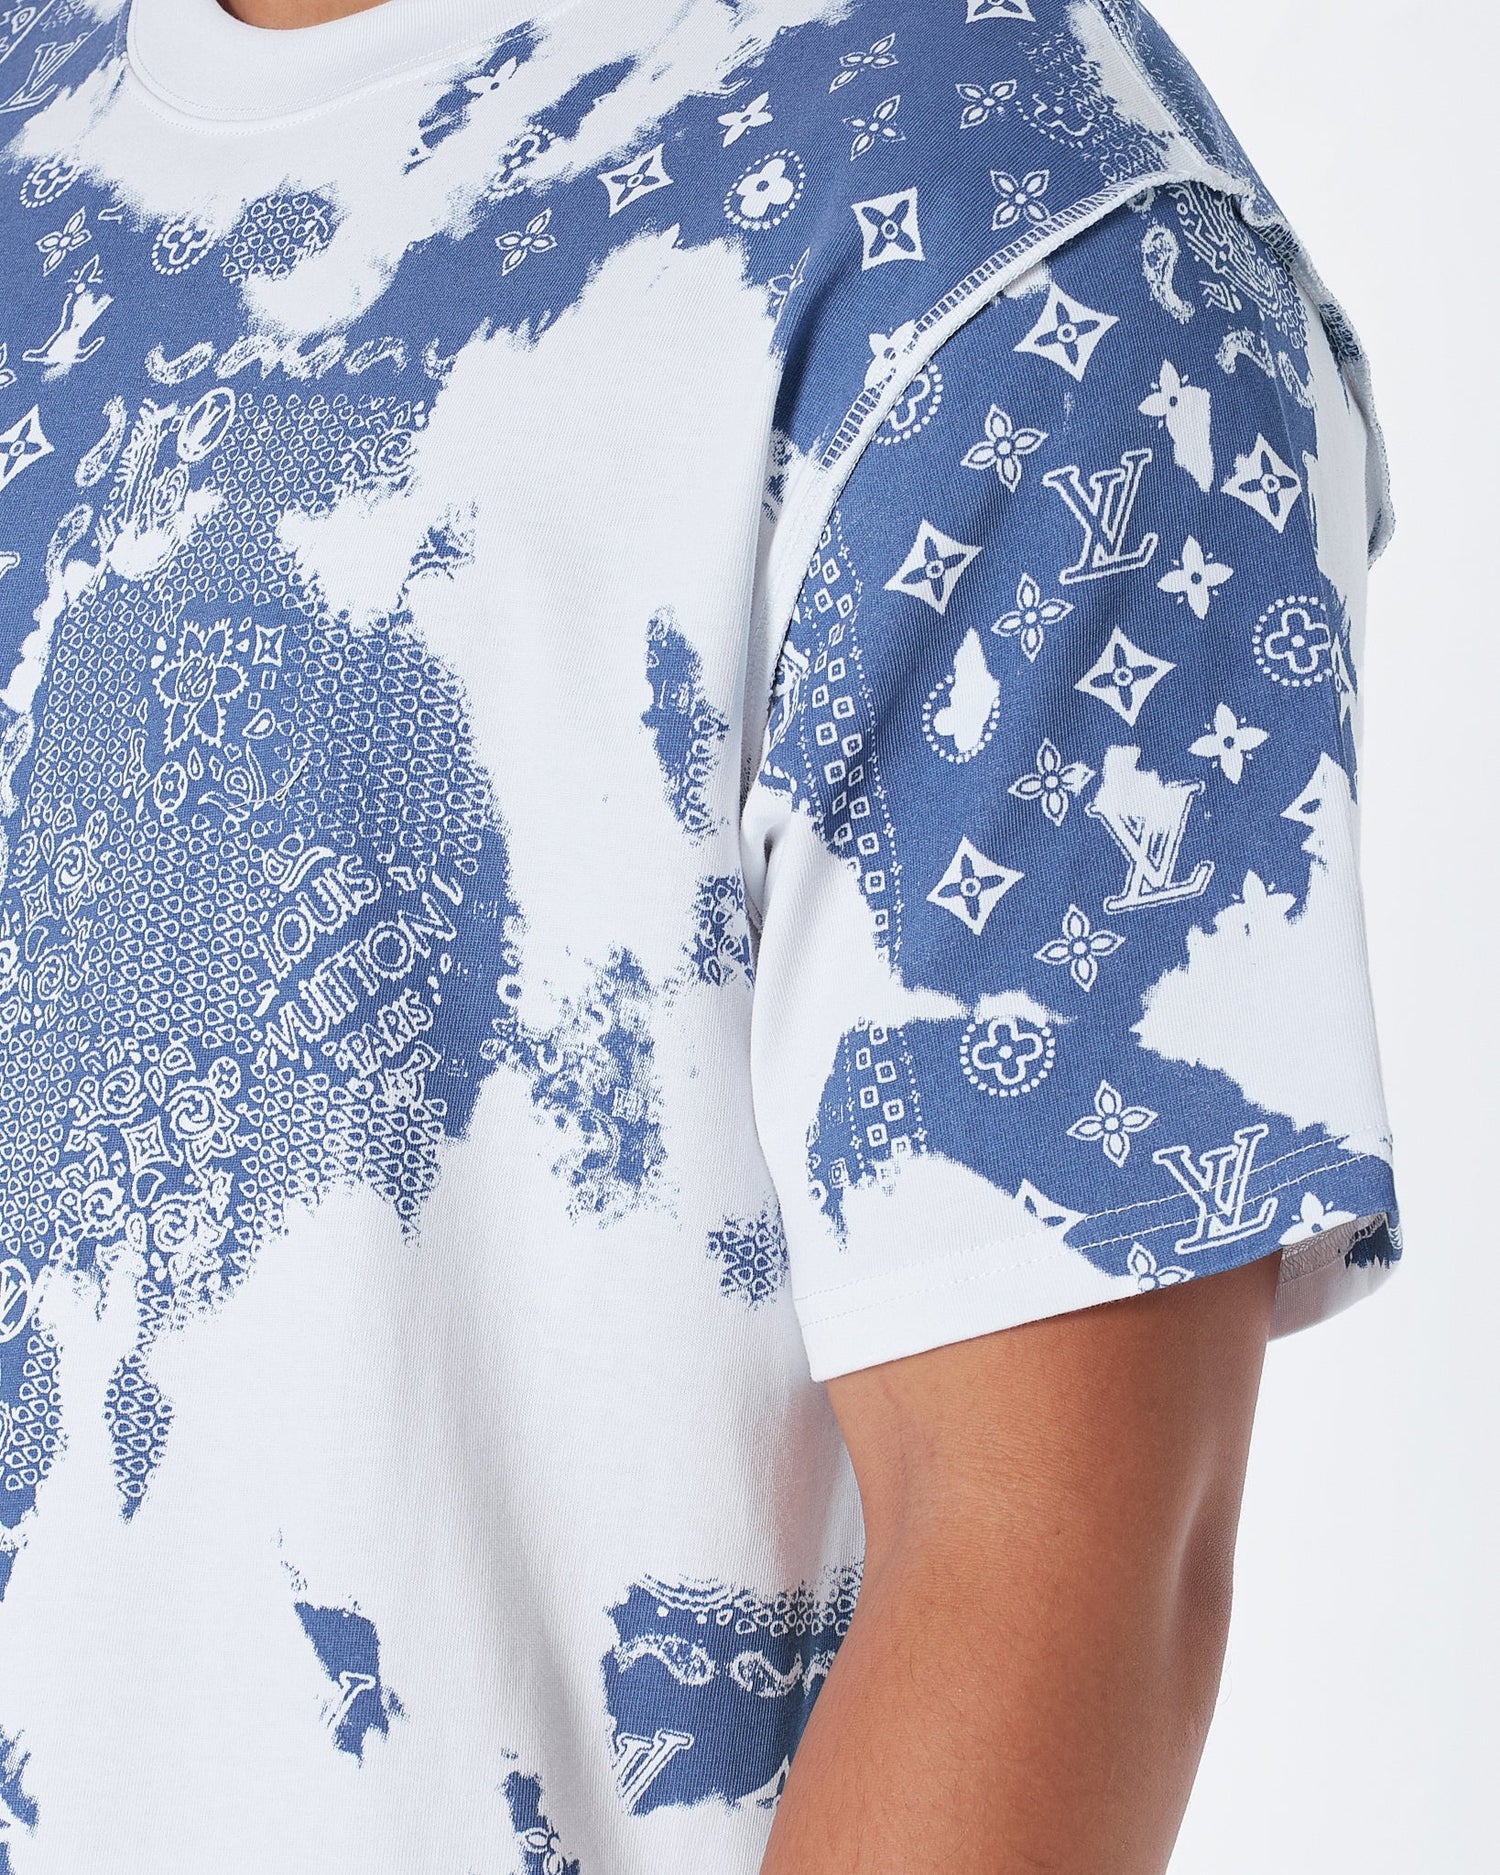 Louis Vuitton Monogram Bandana Printed T-Shirt